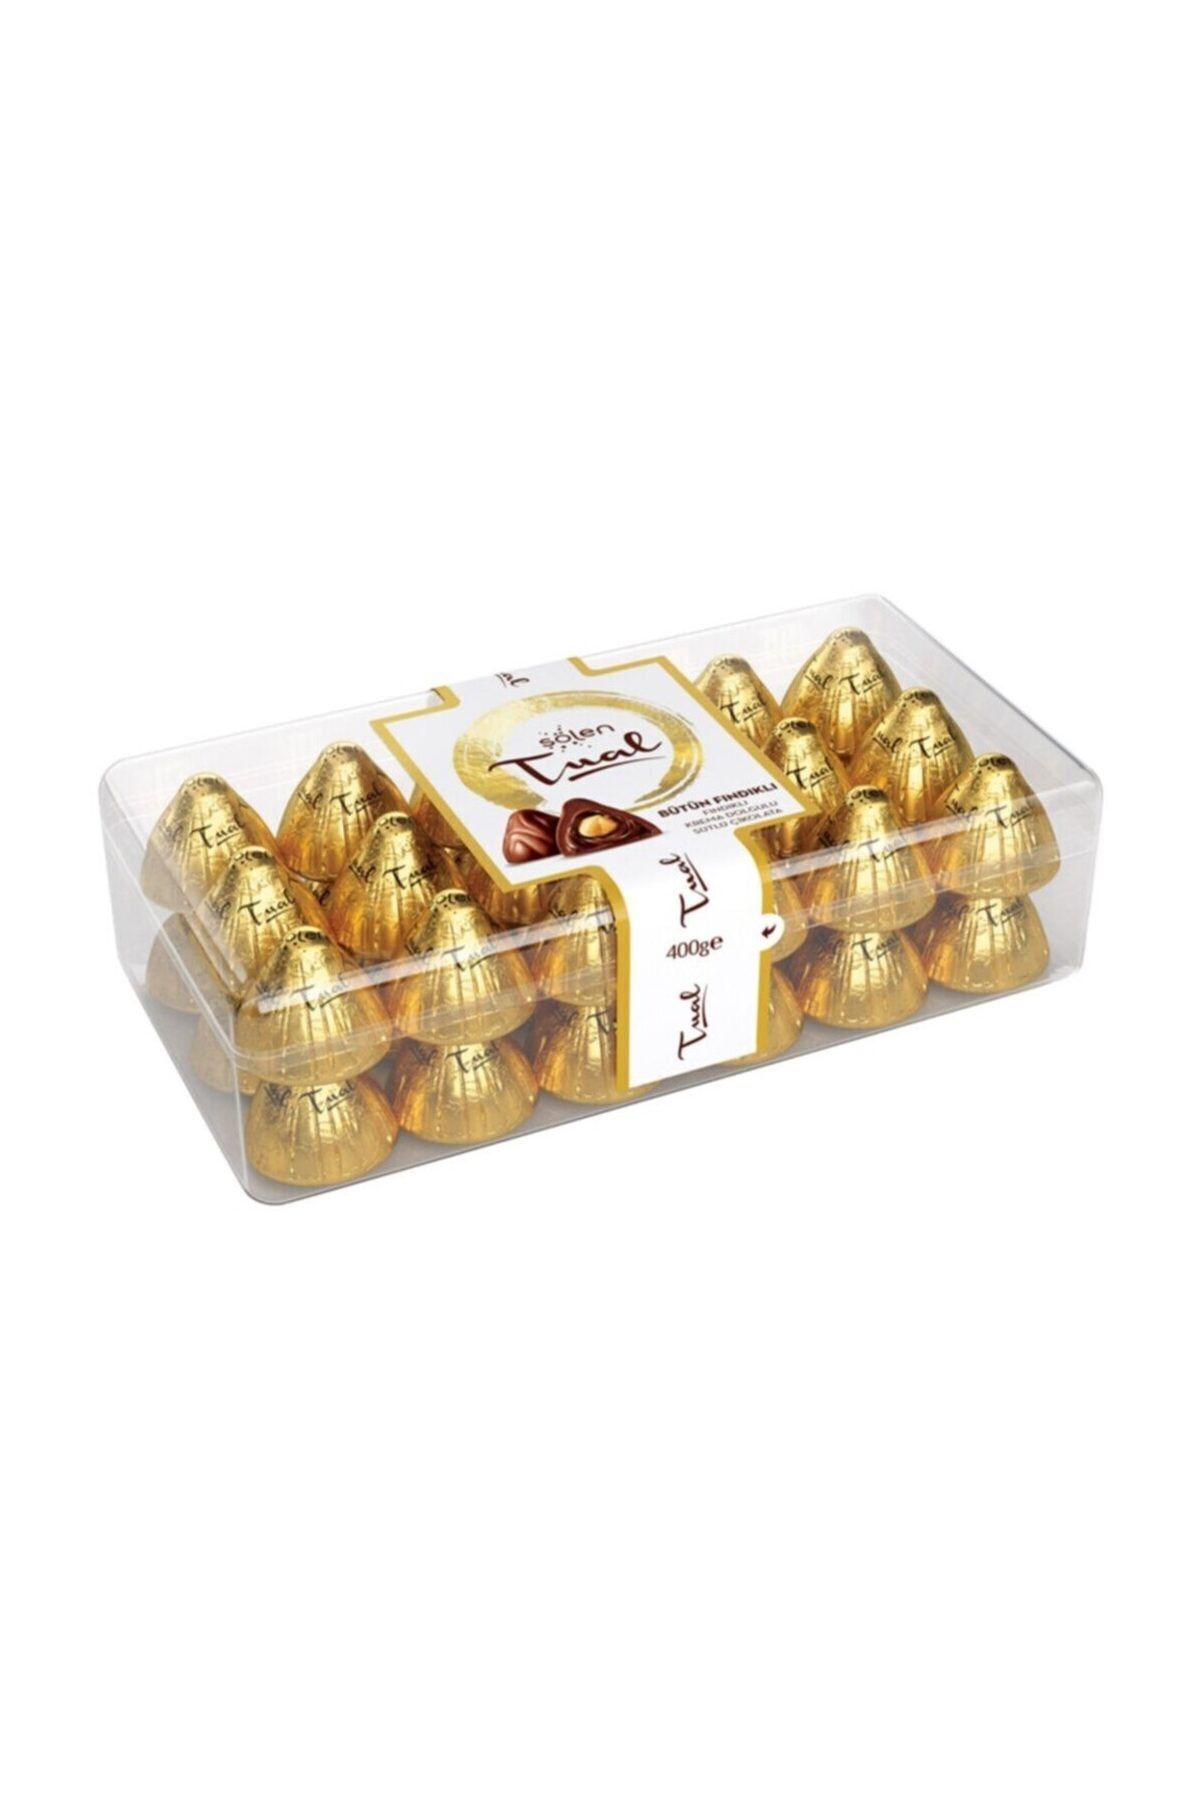 Şölen Tual Gold Fındıklı Çikolata 400gr Şeffaf Kutulu